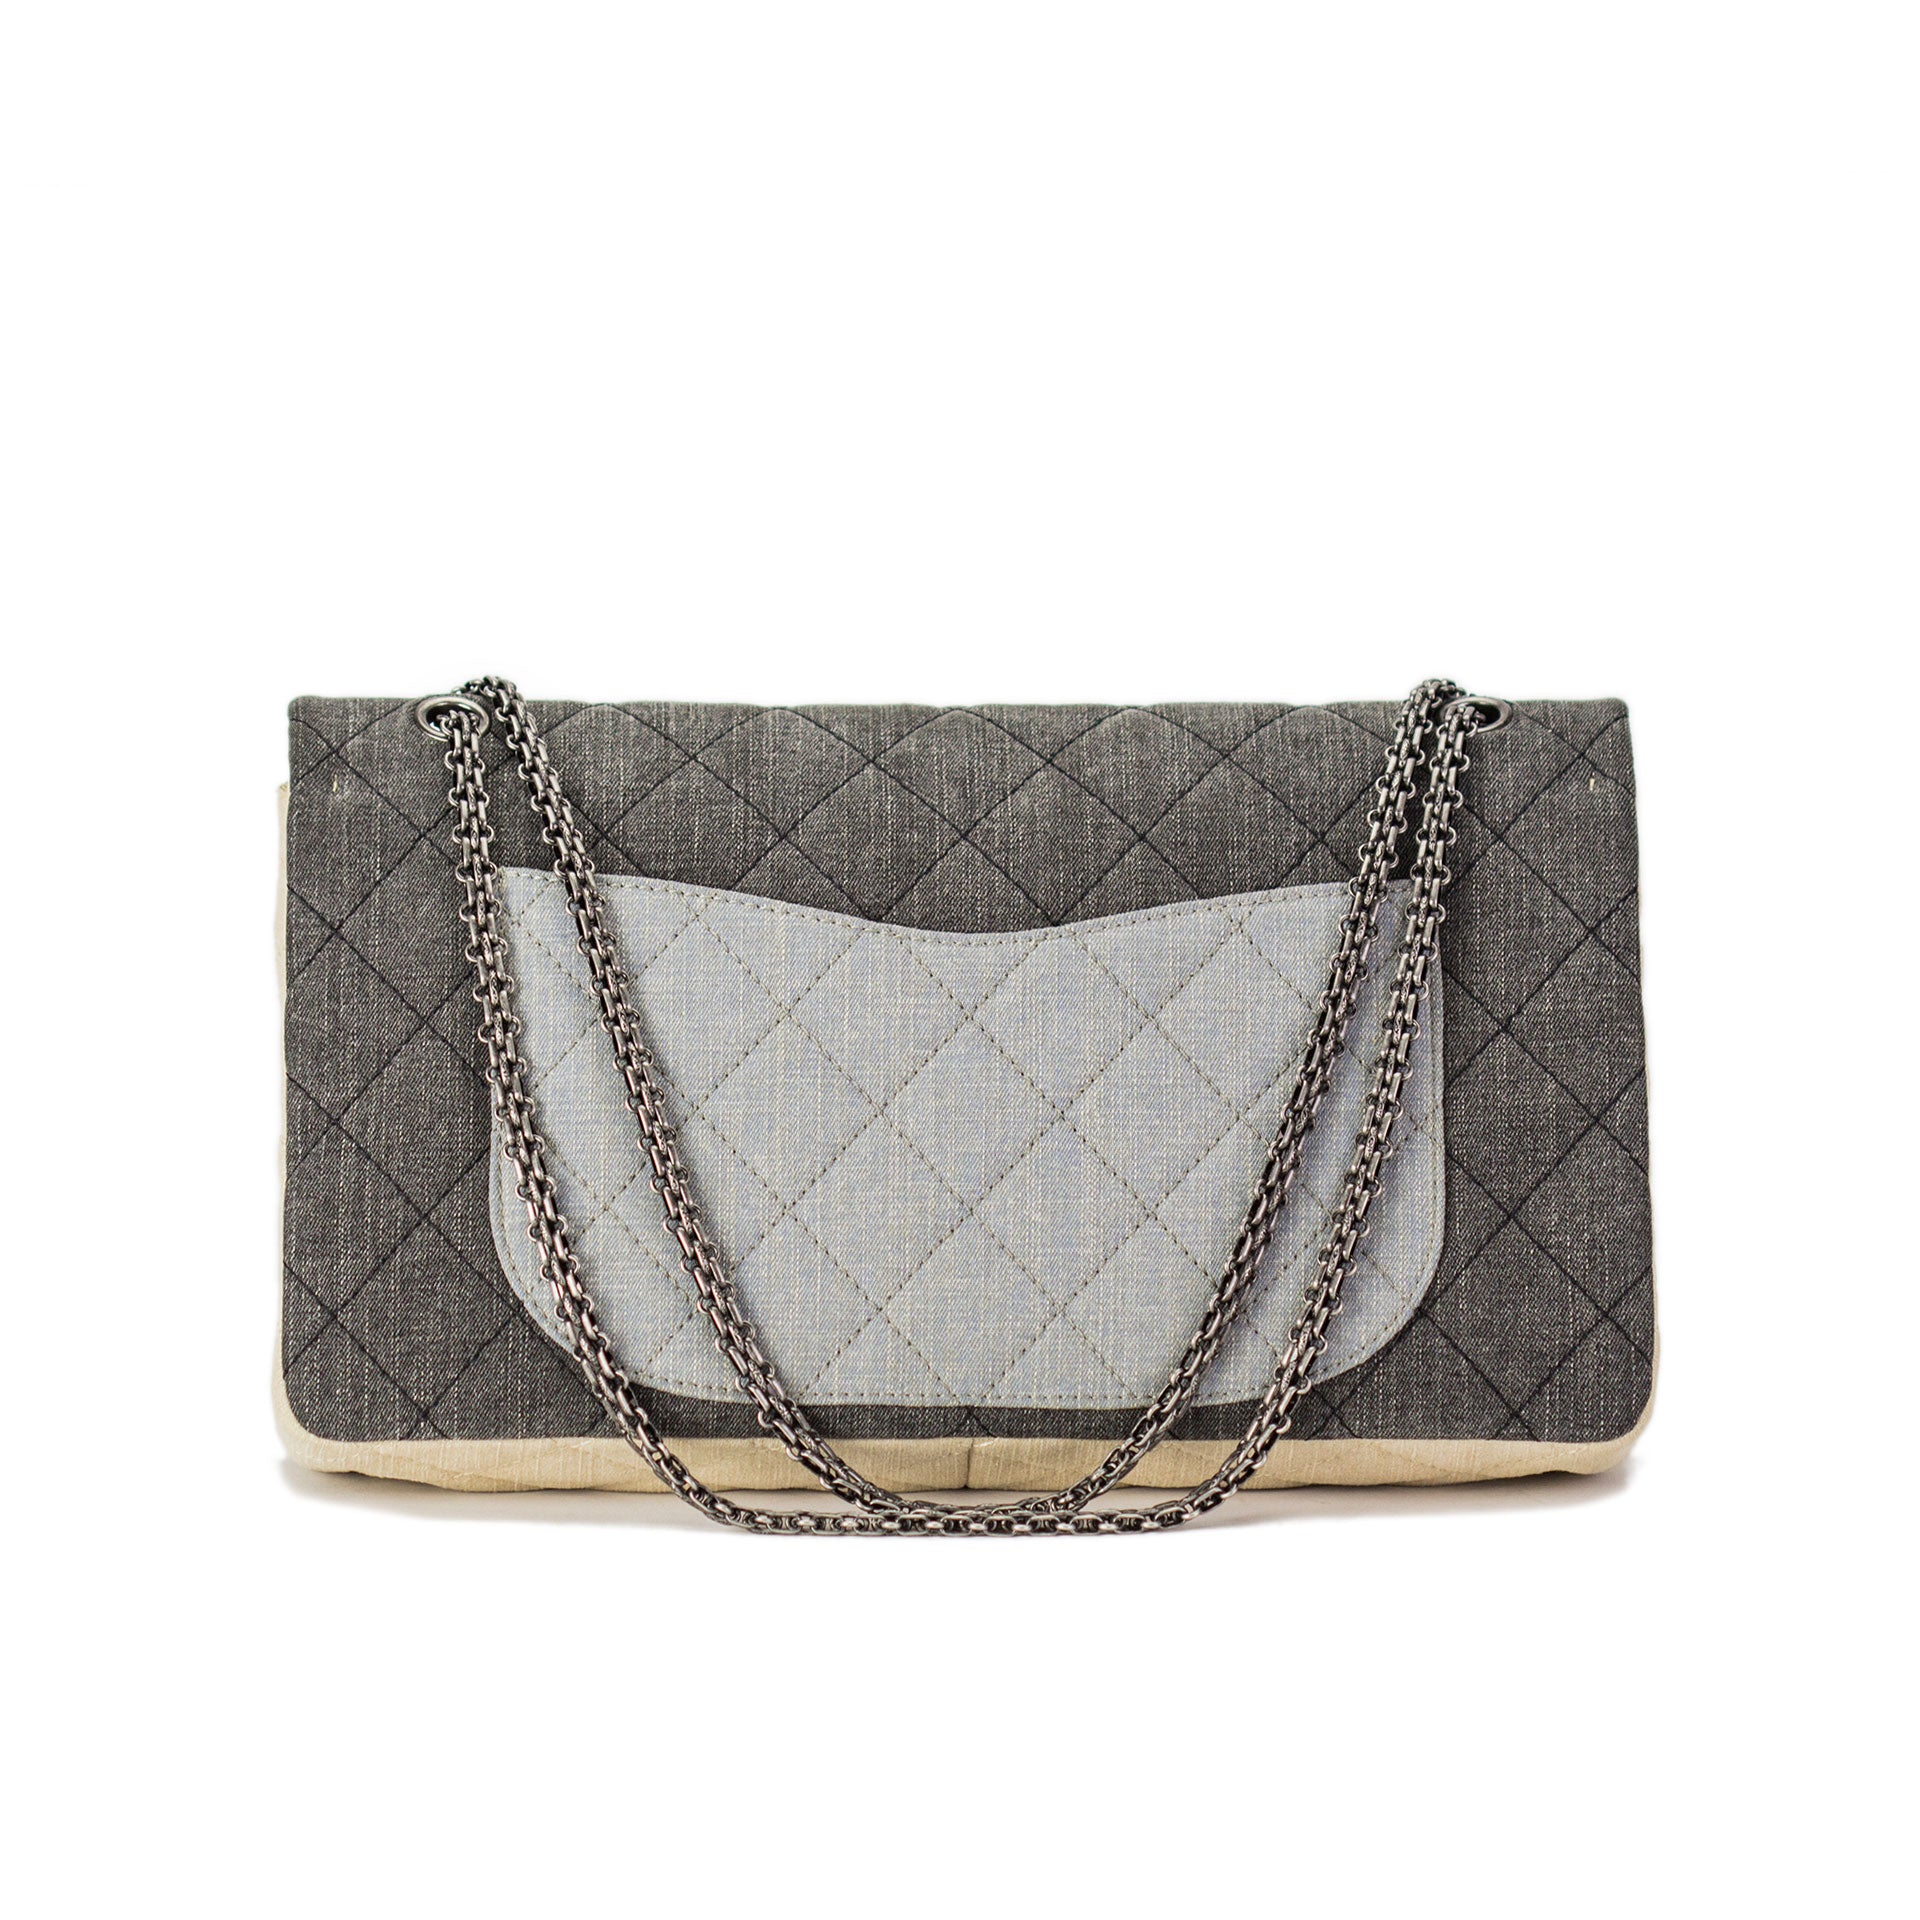 WGACA Chanel Fringed Denim Flap Bag